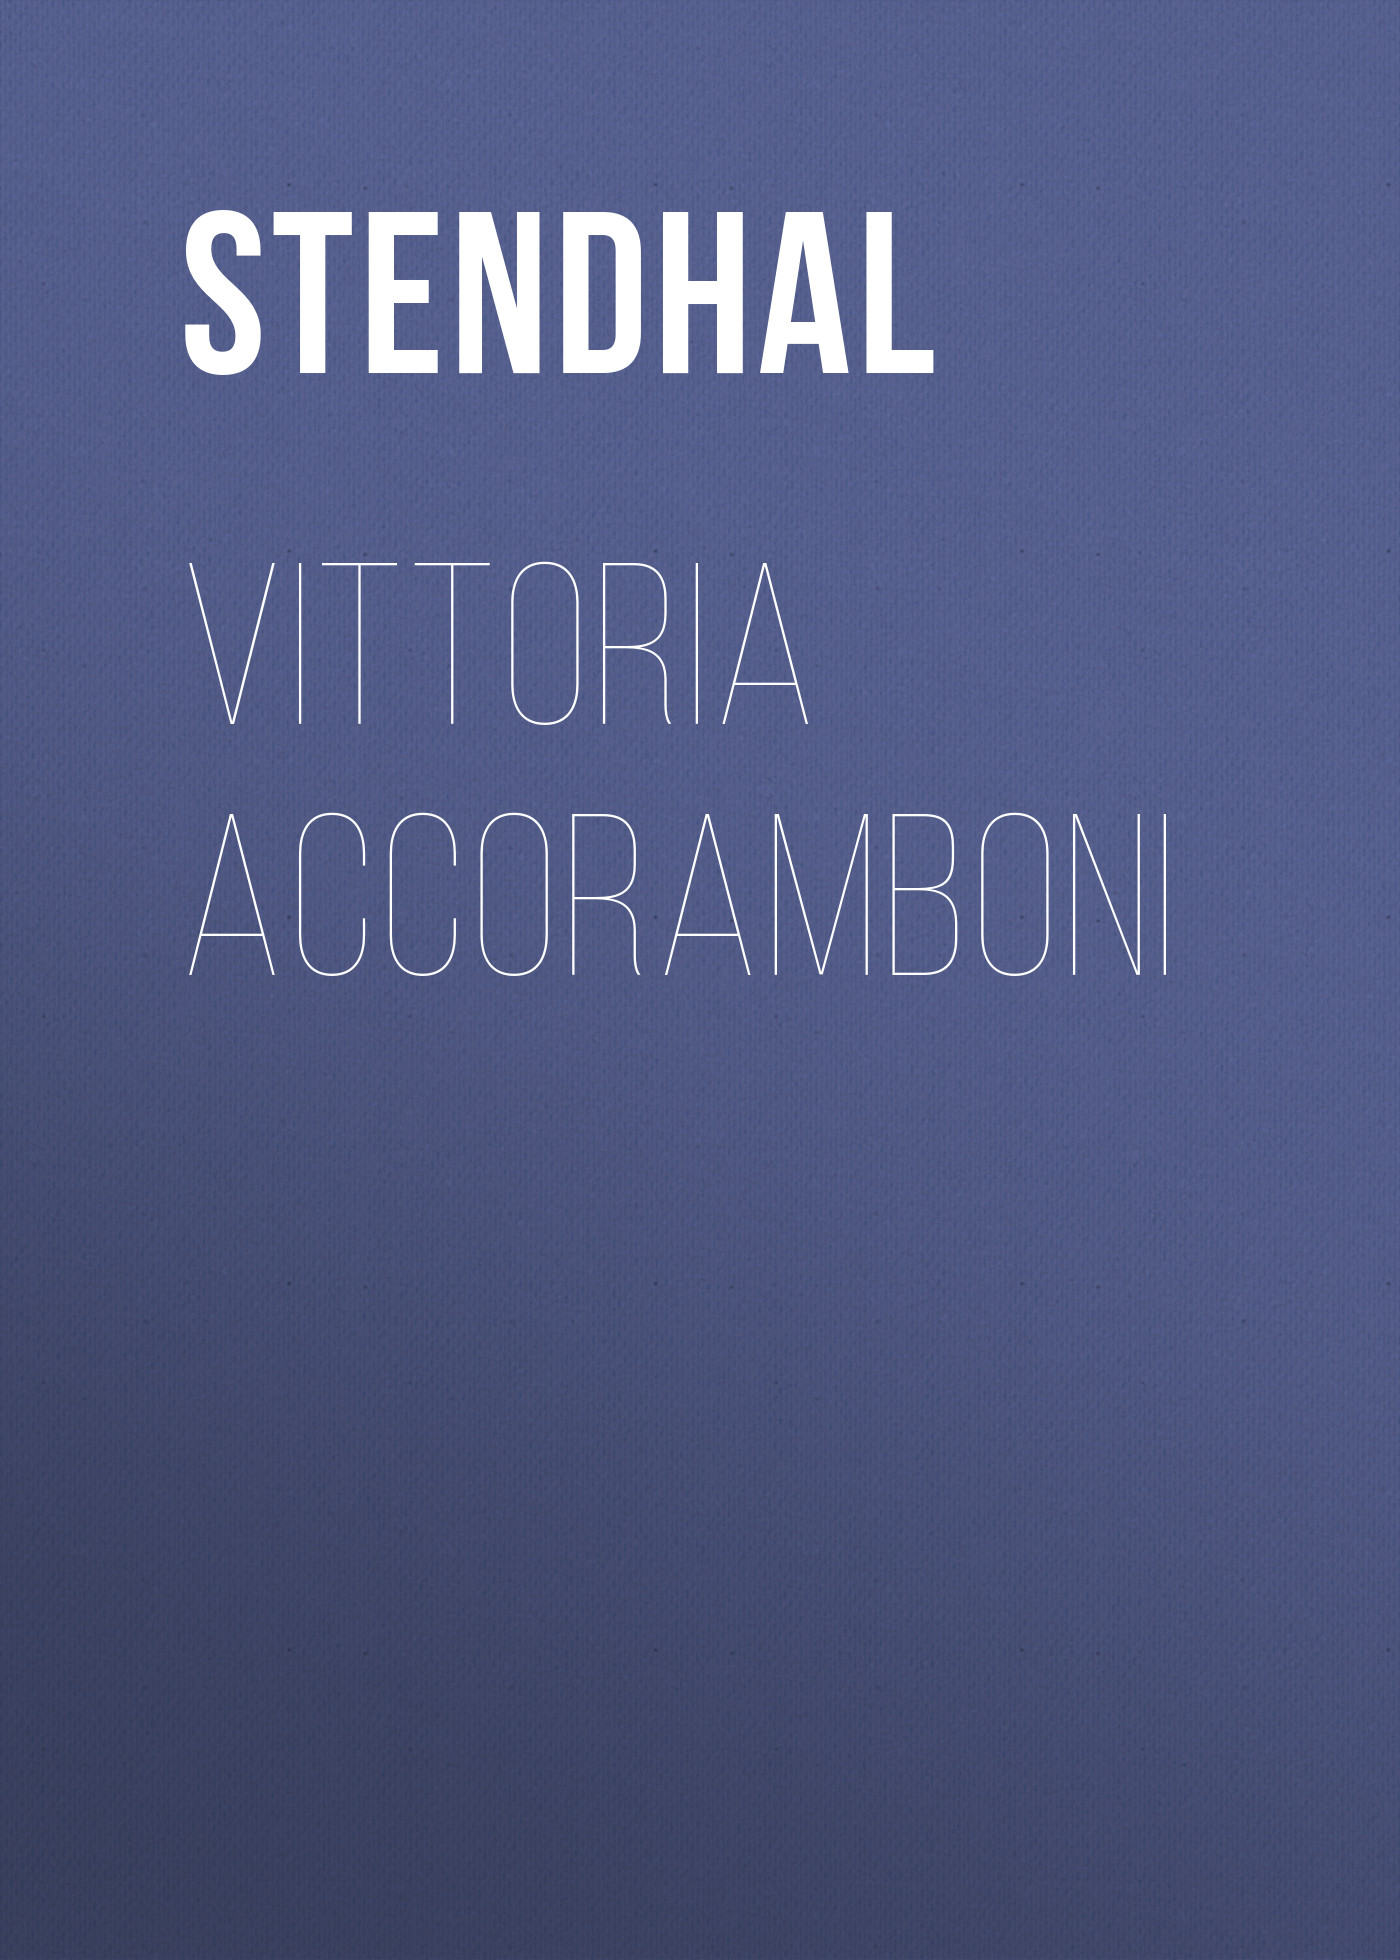 Книга Vittoria Accoramboni из серии , созданная  Stendhal, может относится к жанру Литература 19 века, Зарубежная старинная литература, Зарубежная классика. Стоимость электронной книги Vittoria Accoramboni с идентификатором 25477359 составляет 0 руб.